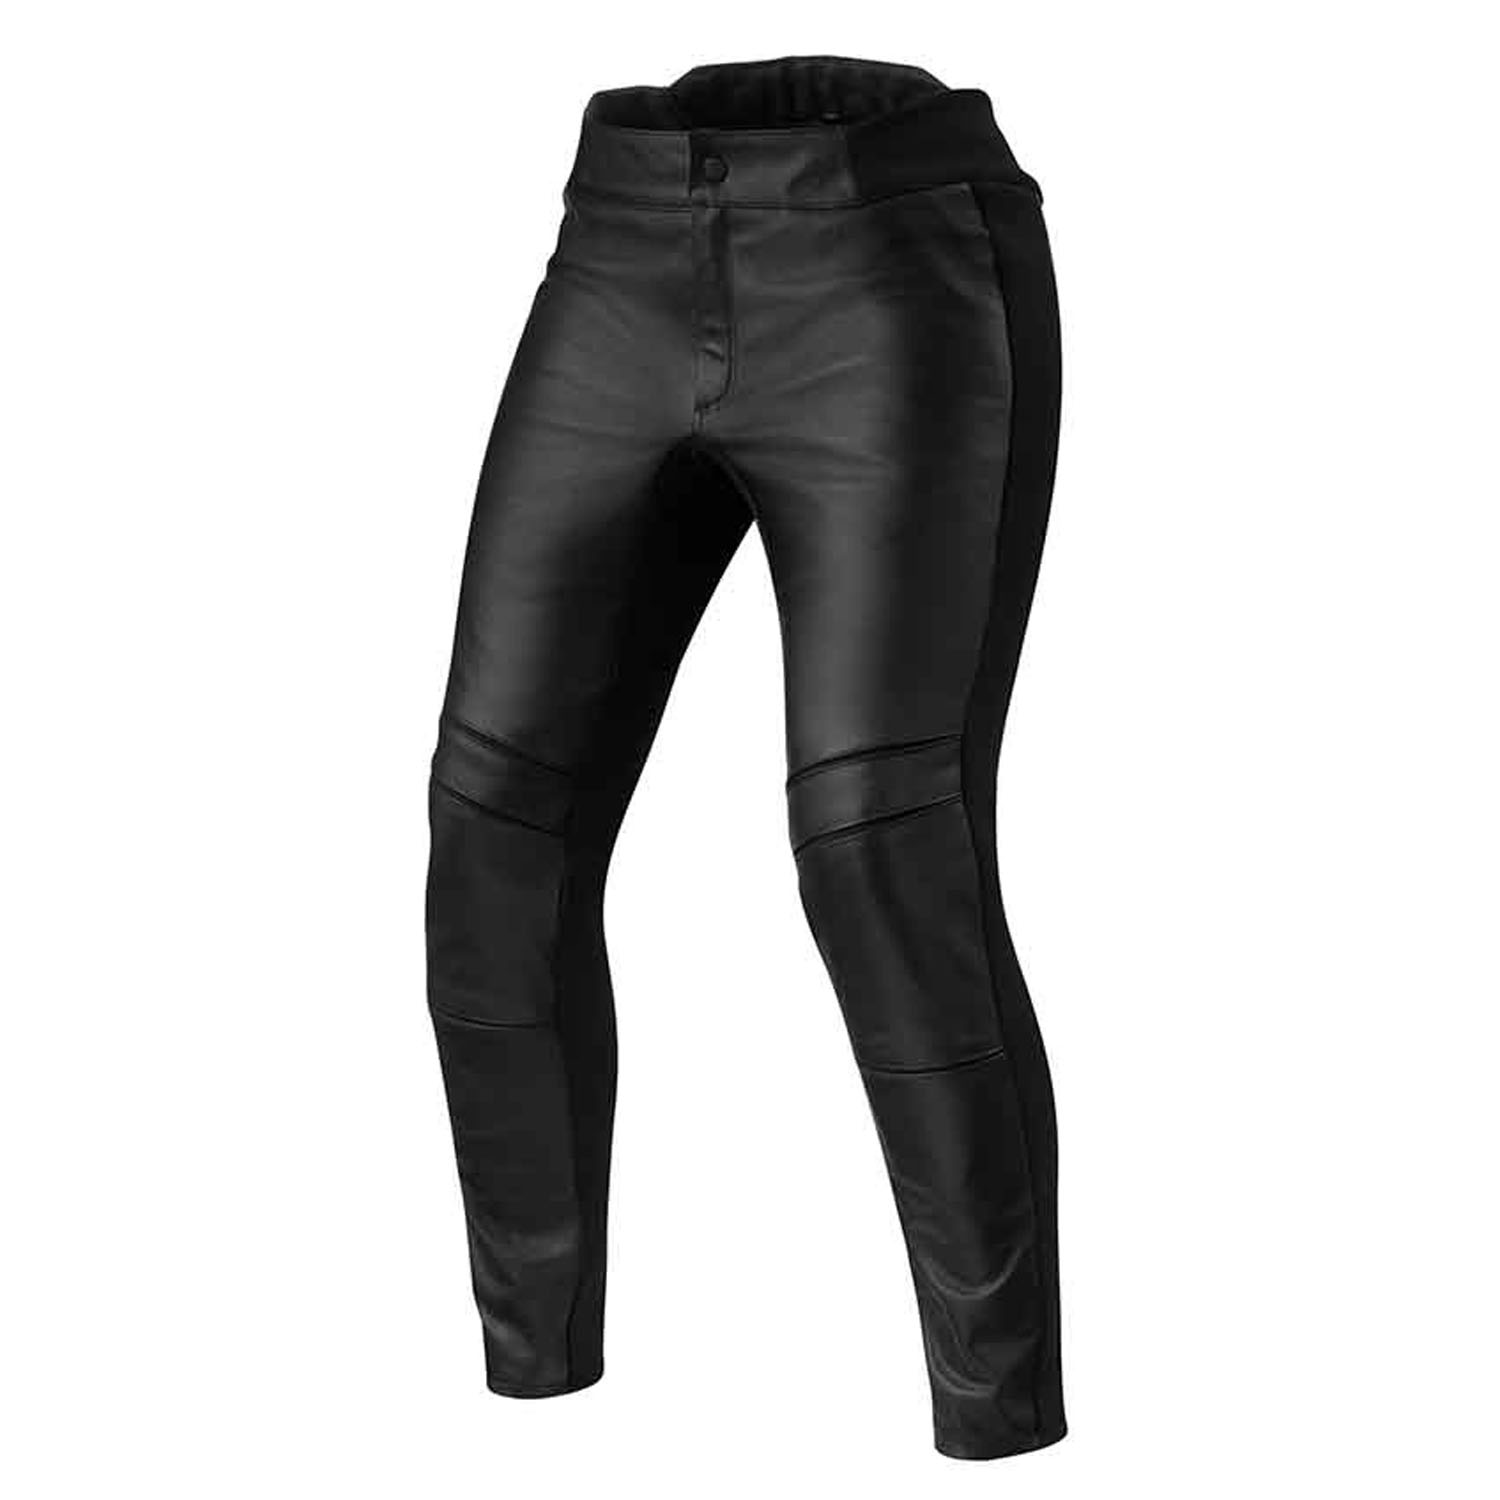 Image of REV'IT! Maci Ladies Black Short Motorcycle Pants Size 40 EN